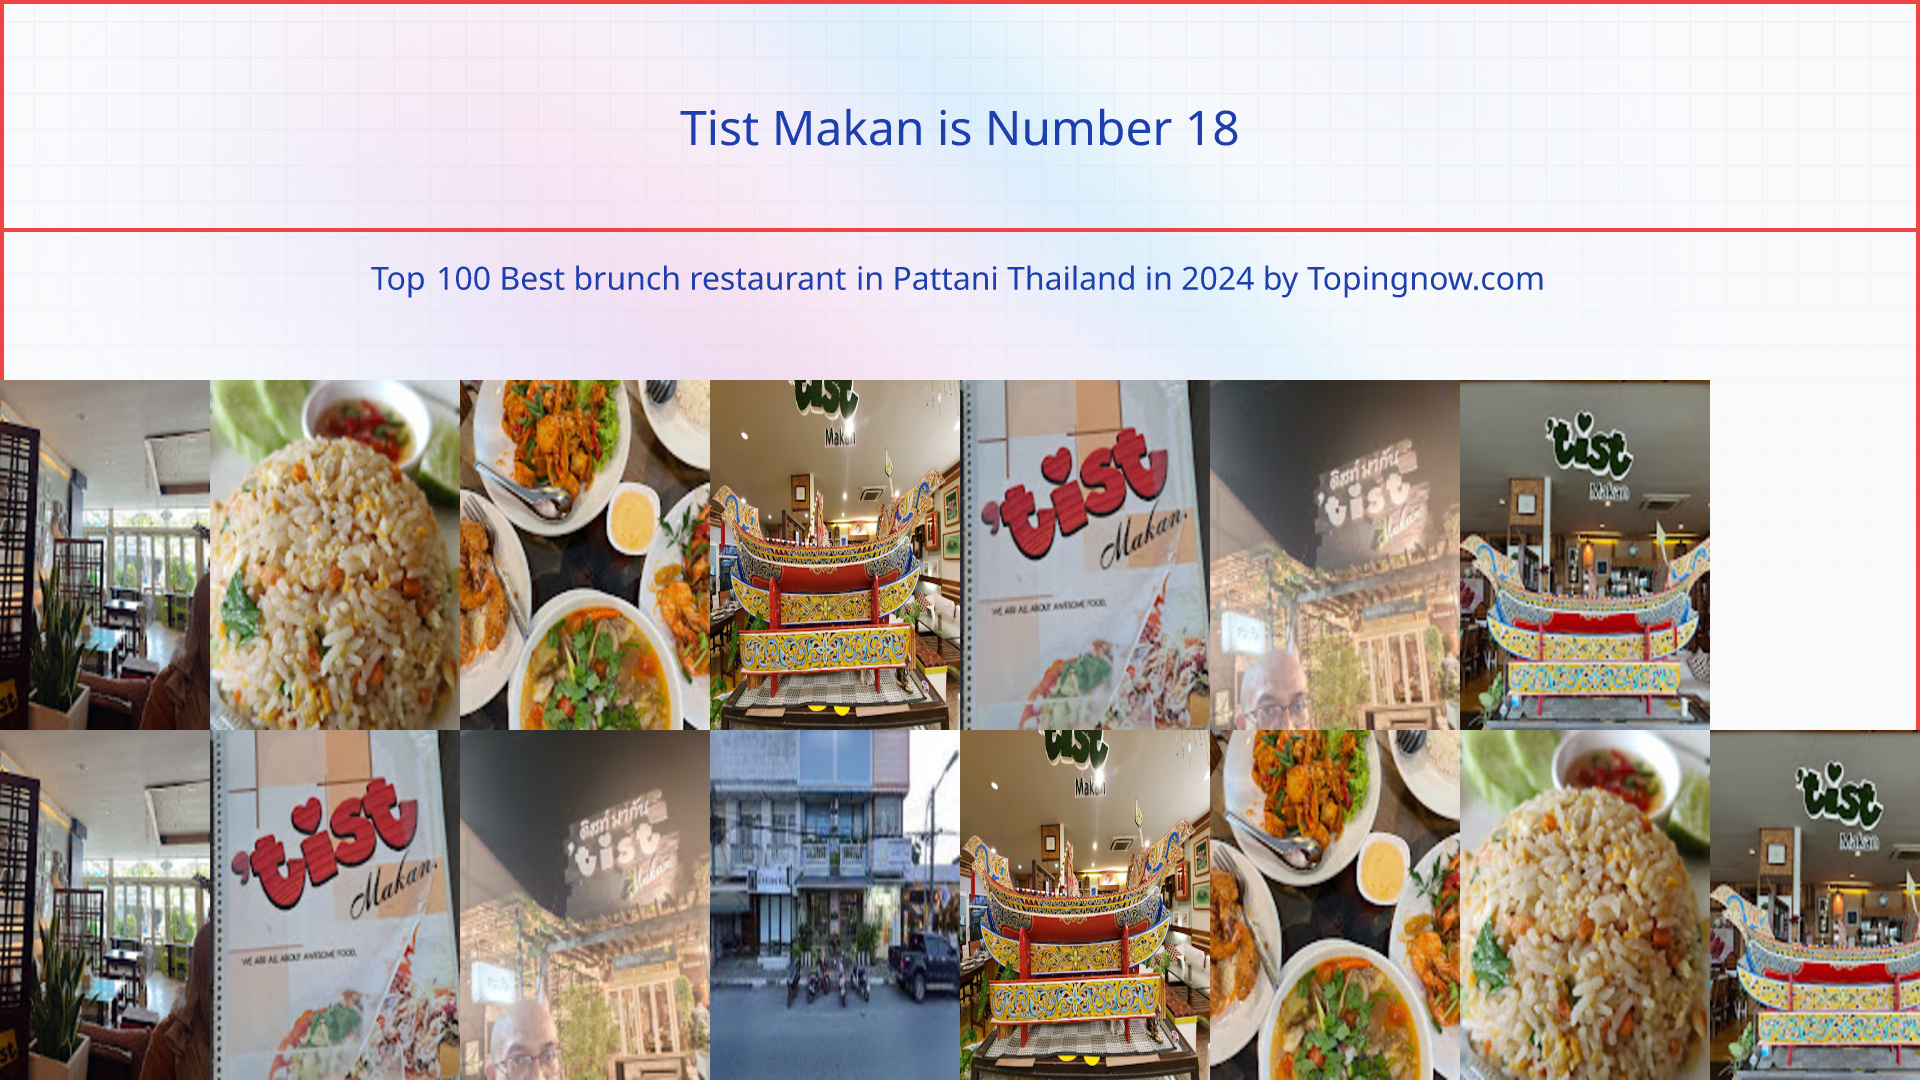 Tist Makan: Top 100 Best brunch restaurant in Pattani Thailand in 2024